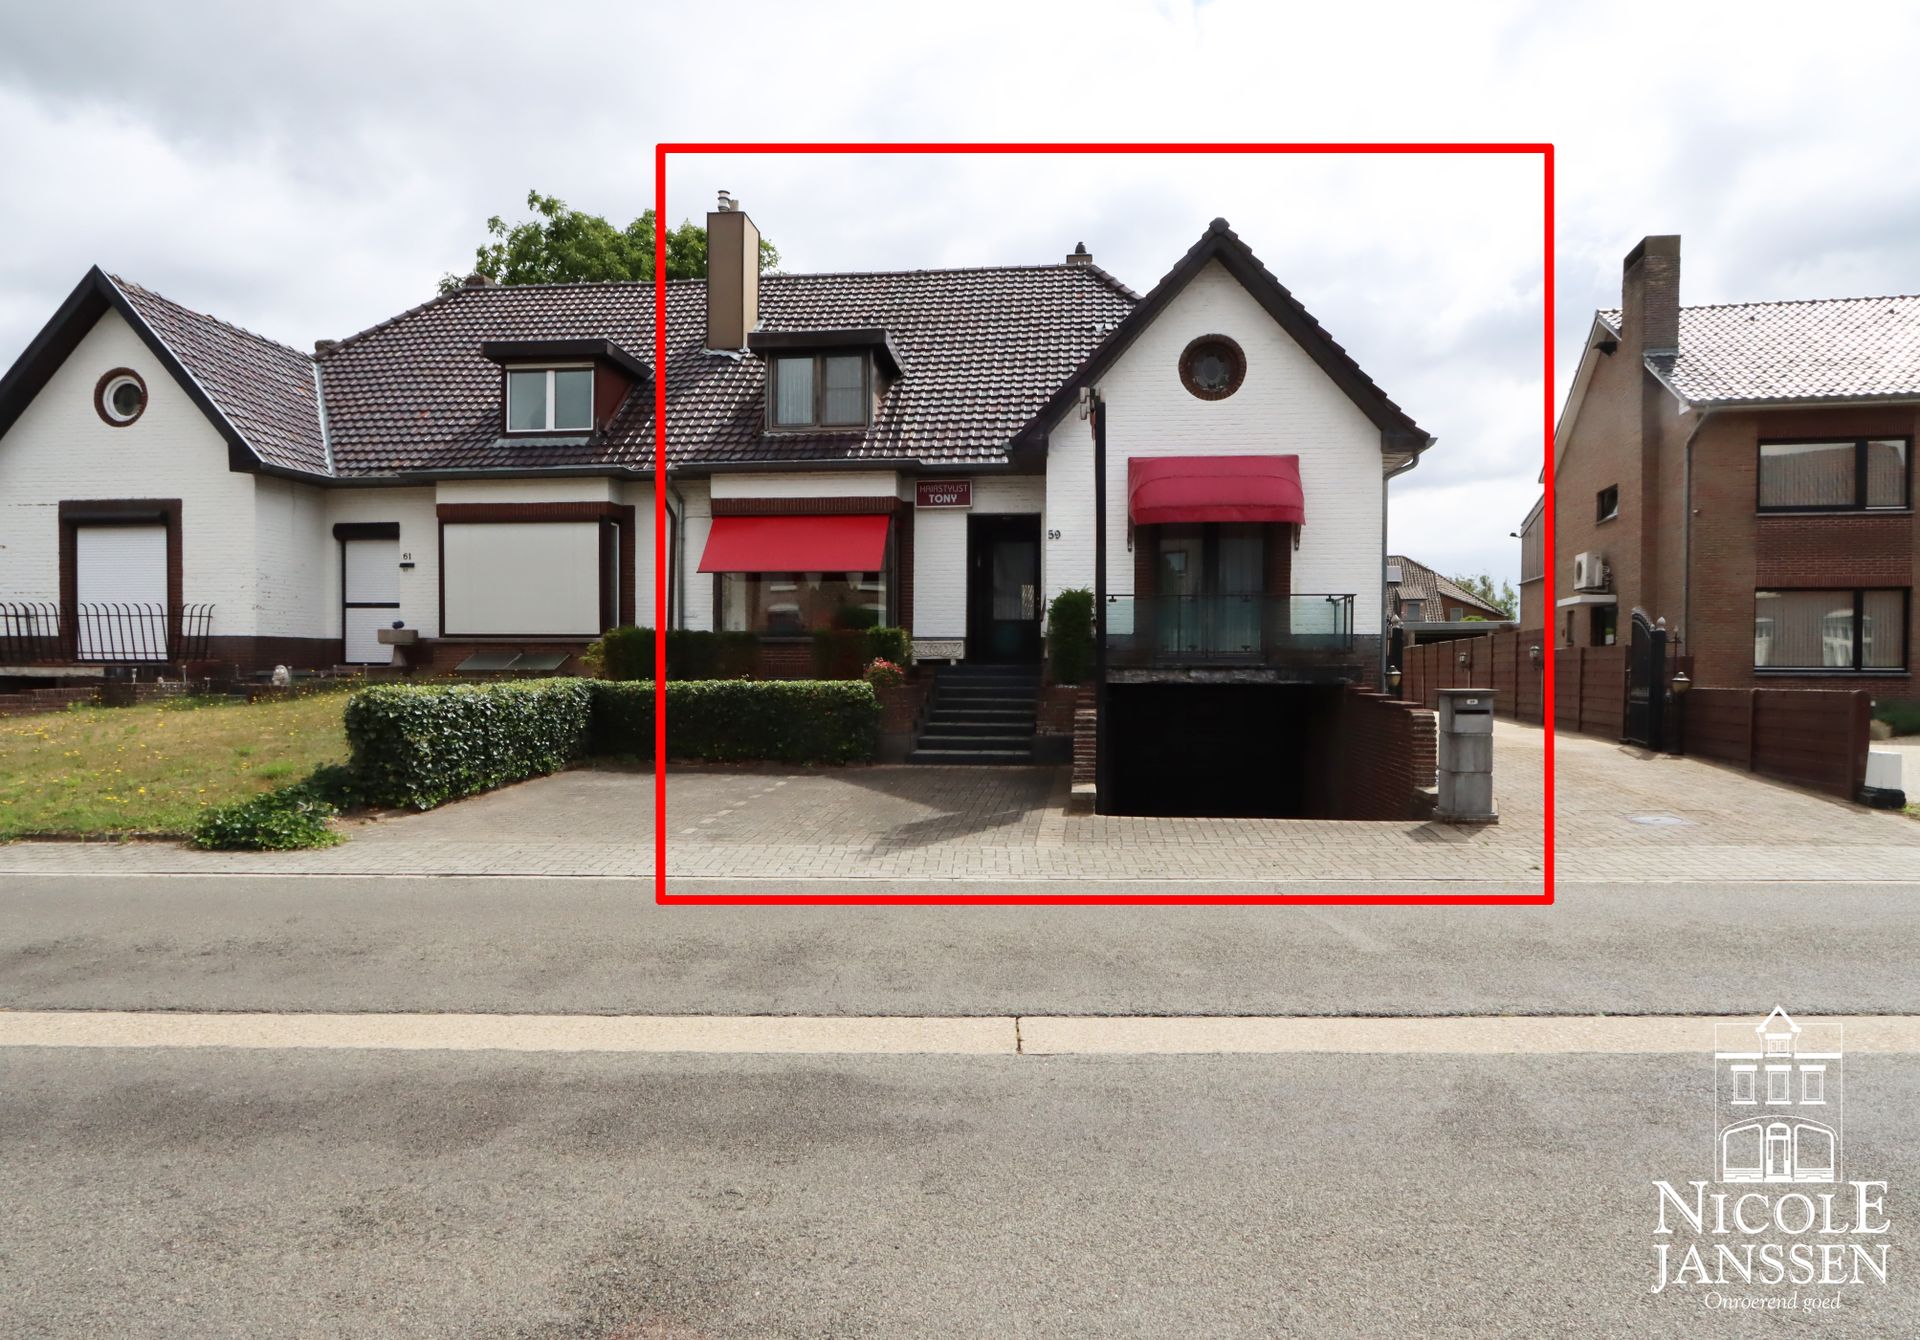 Nicole Janssen - huis te koop - Kantonsweg 59 te Rotem - voorzijde3.jpg